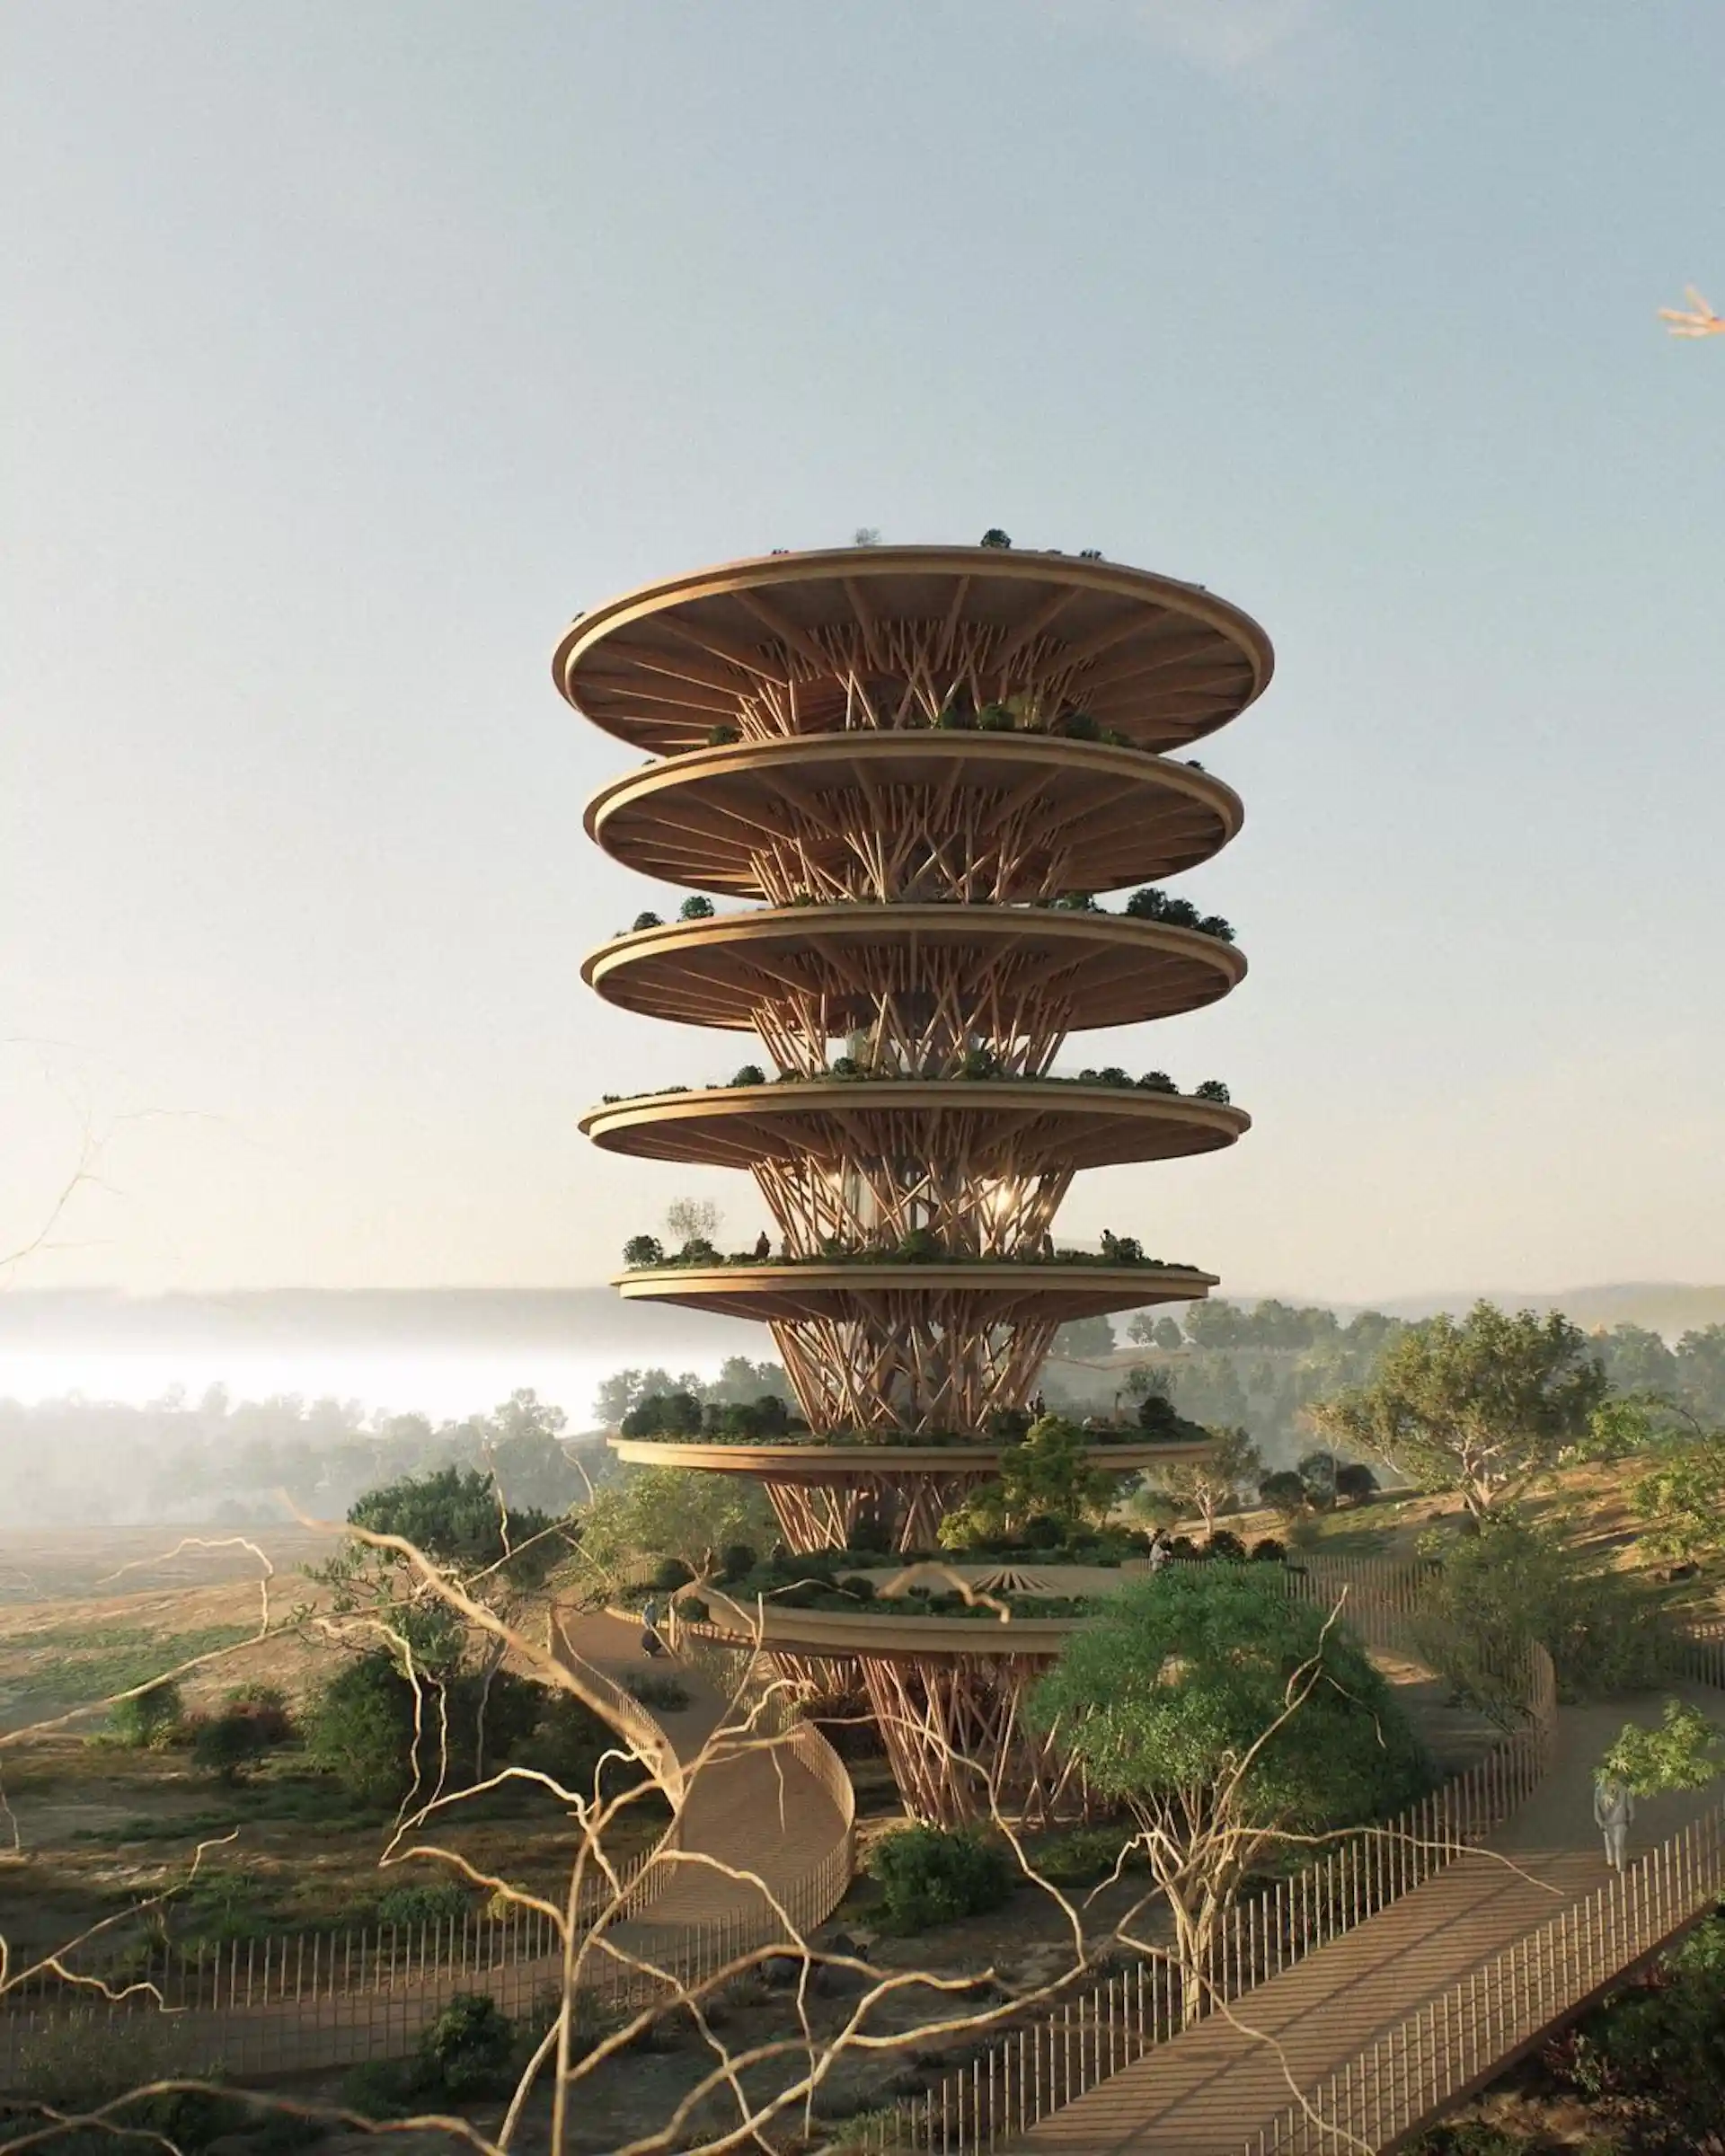 La increíble torre de observación de madera para ver animales en Kenia